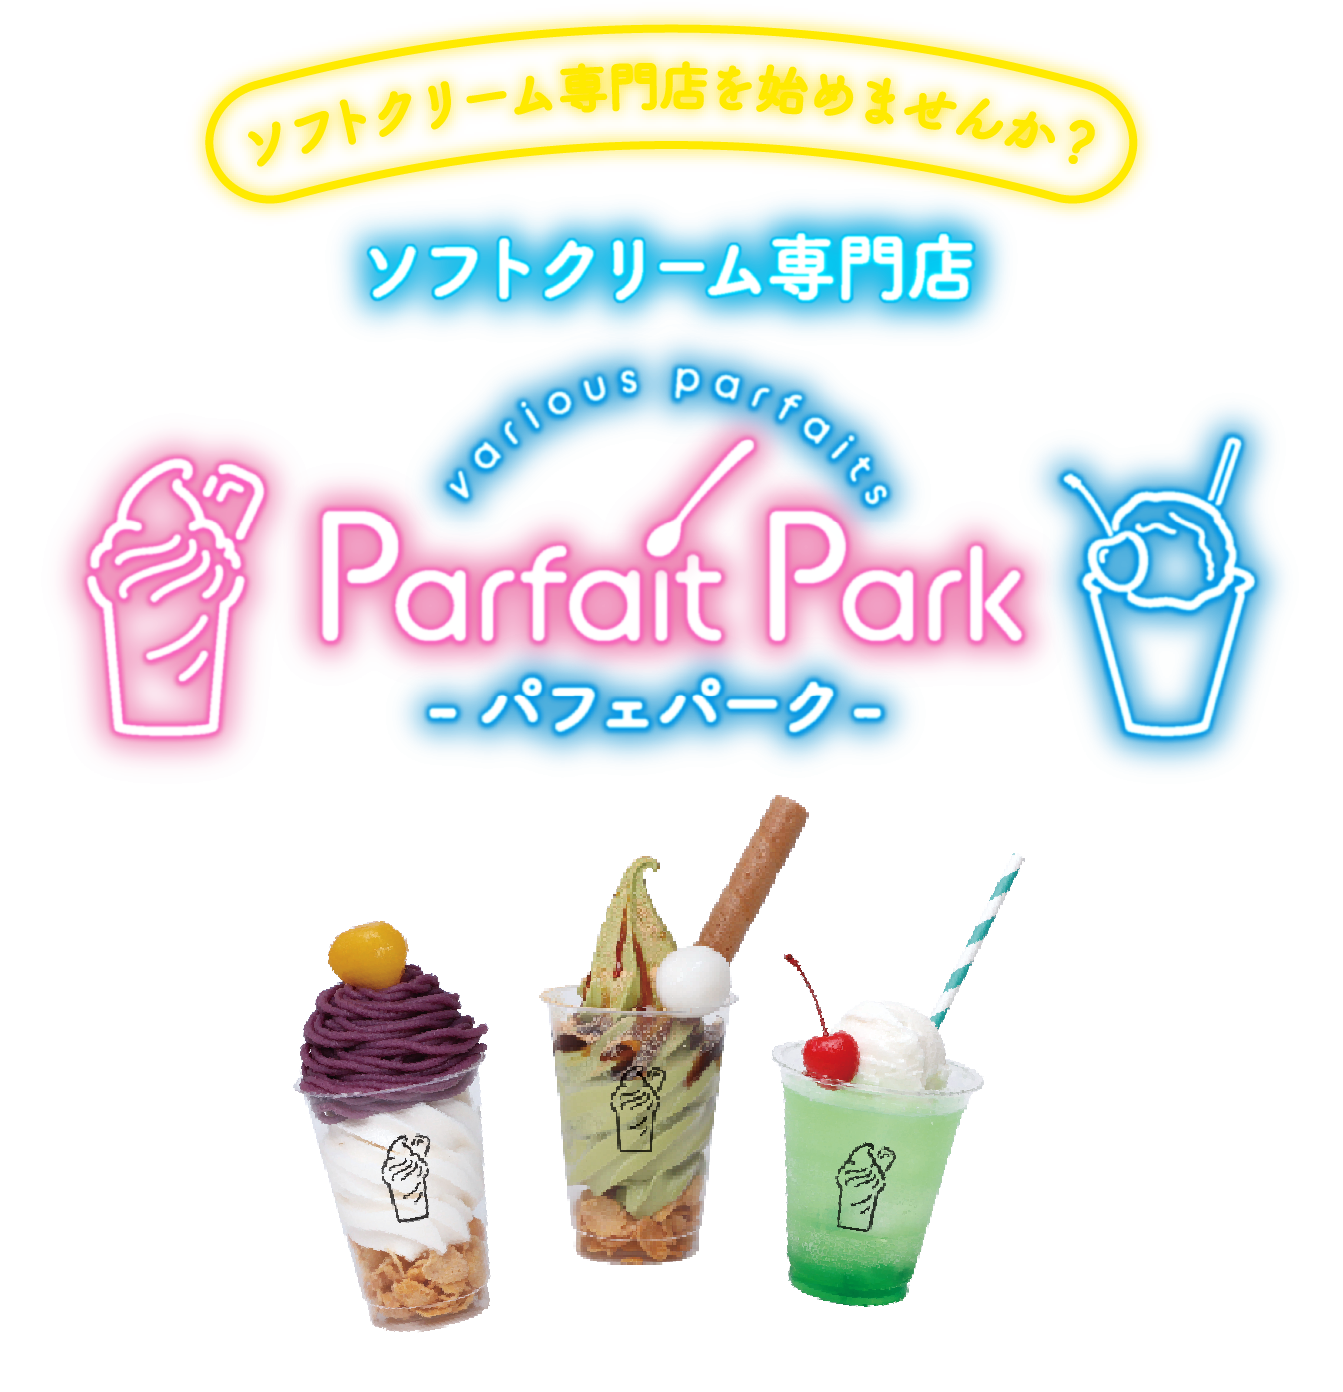 ソフトクリーム専門店を始めませんか？ ソフトクリーム専門店 Parfait Park -パフェパーク-